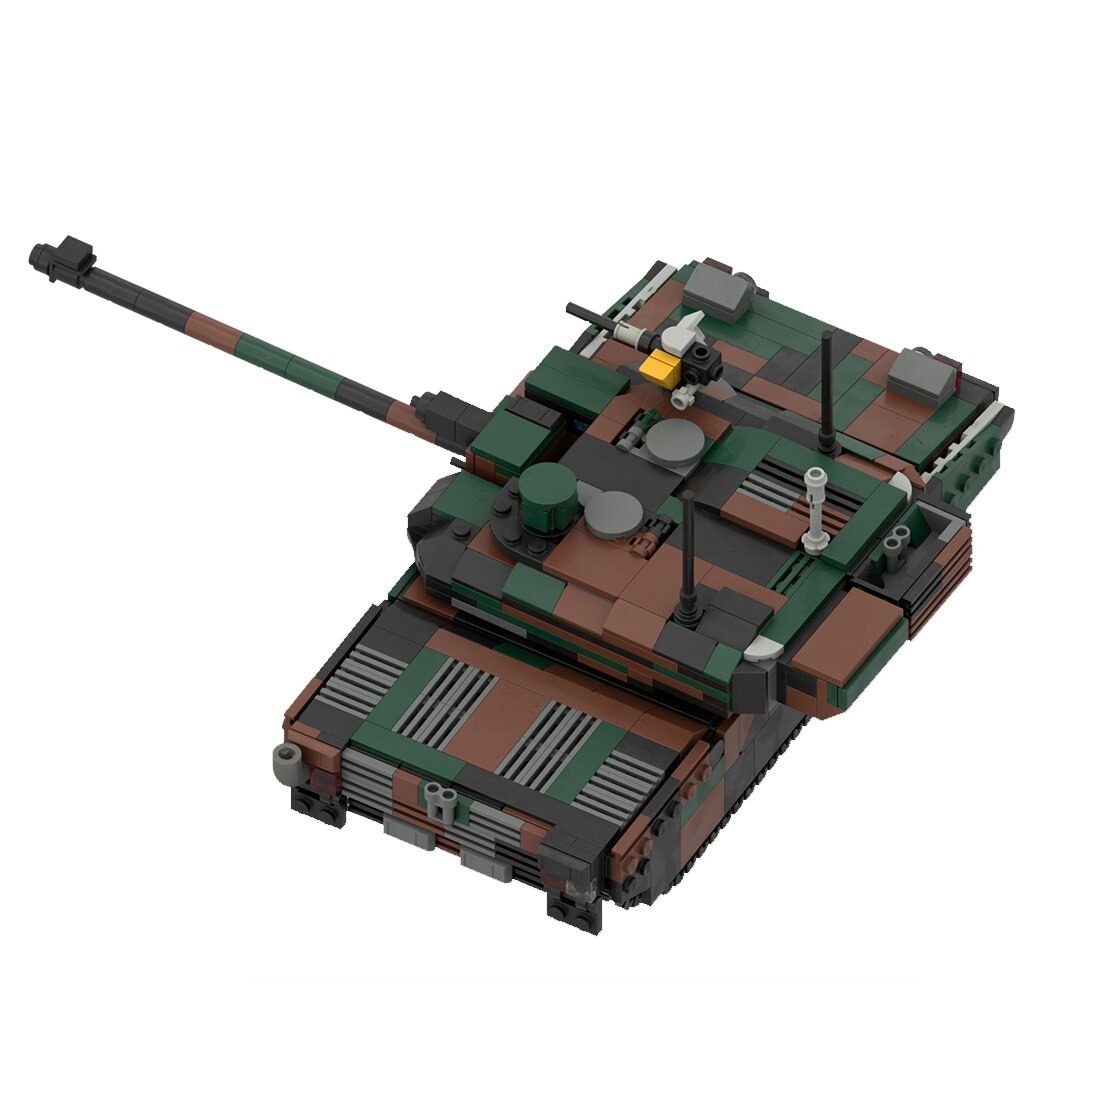 moc 34858 leclerc main battle tank model main 1 - SUPER18K Block